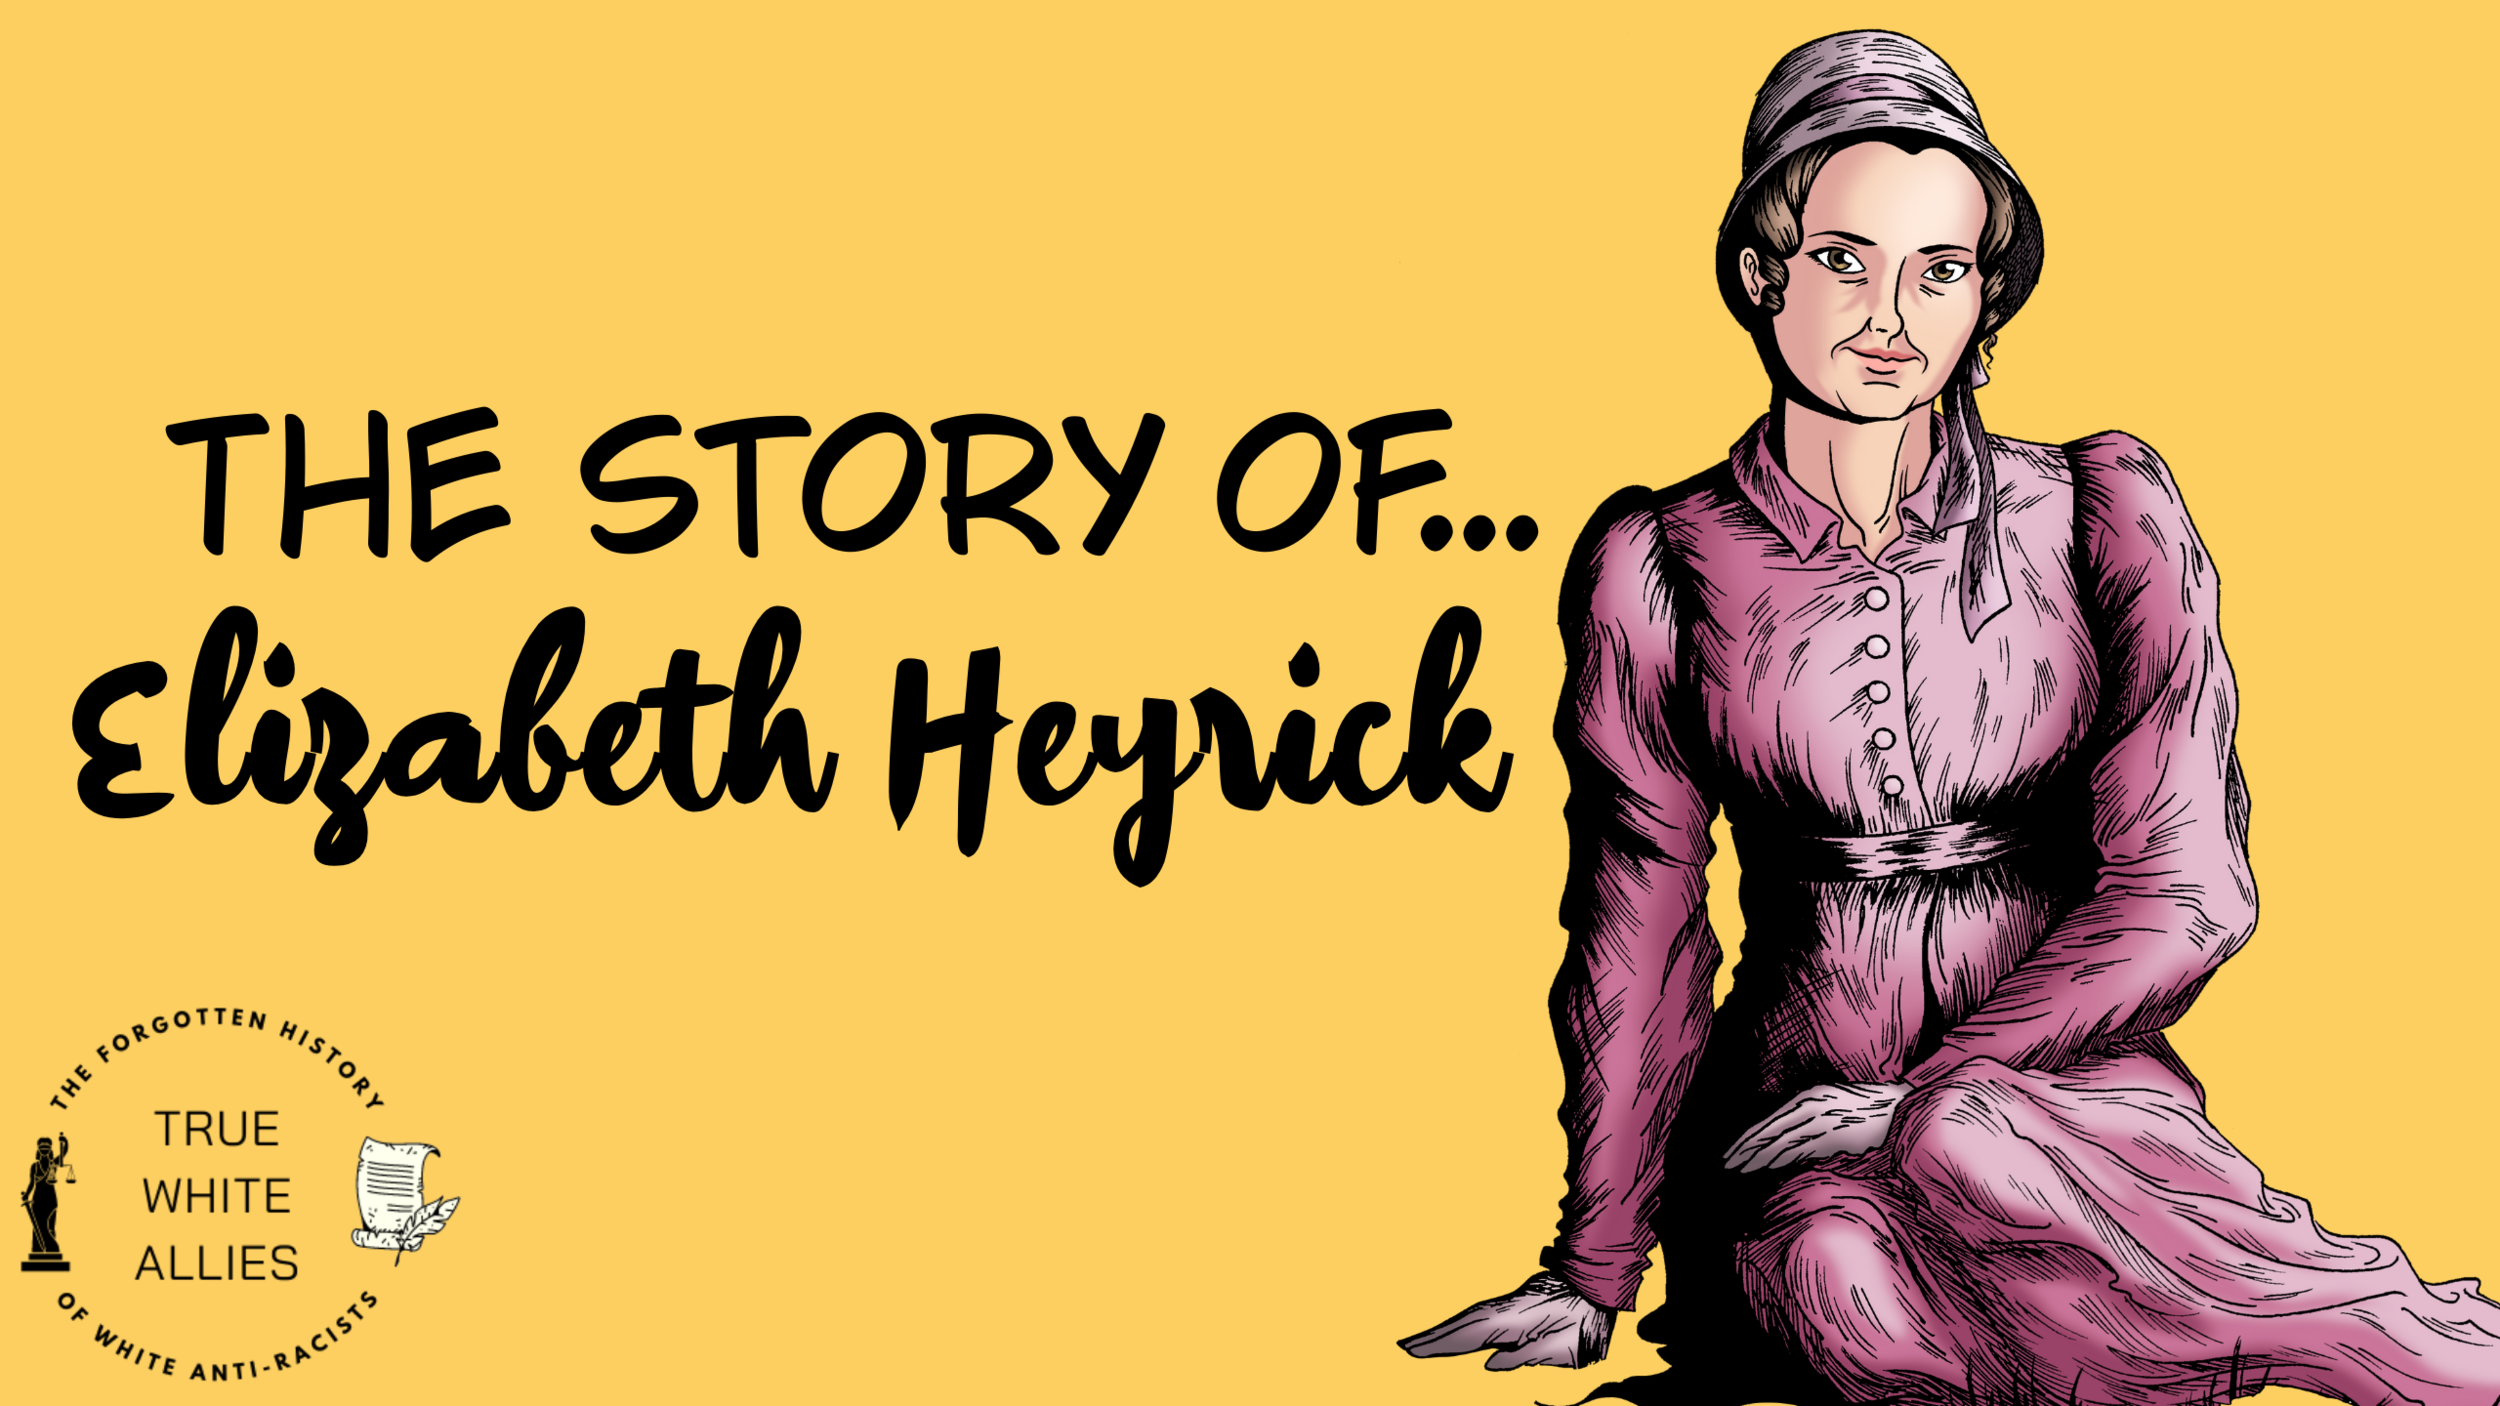 The Story of Elizabeth Heyrick (Copy) (Copy) (Copy) (Copy)